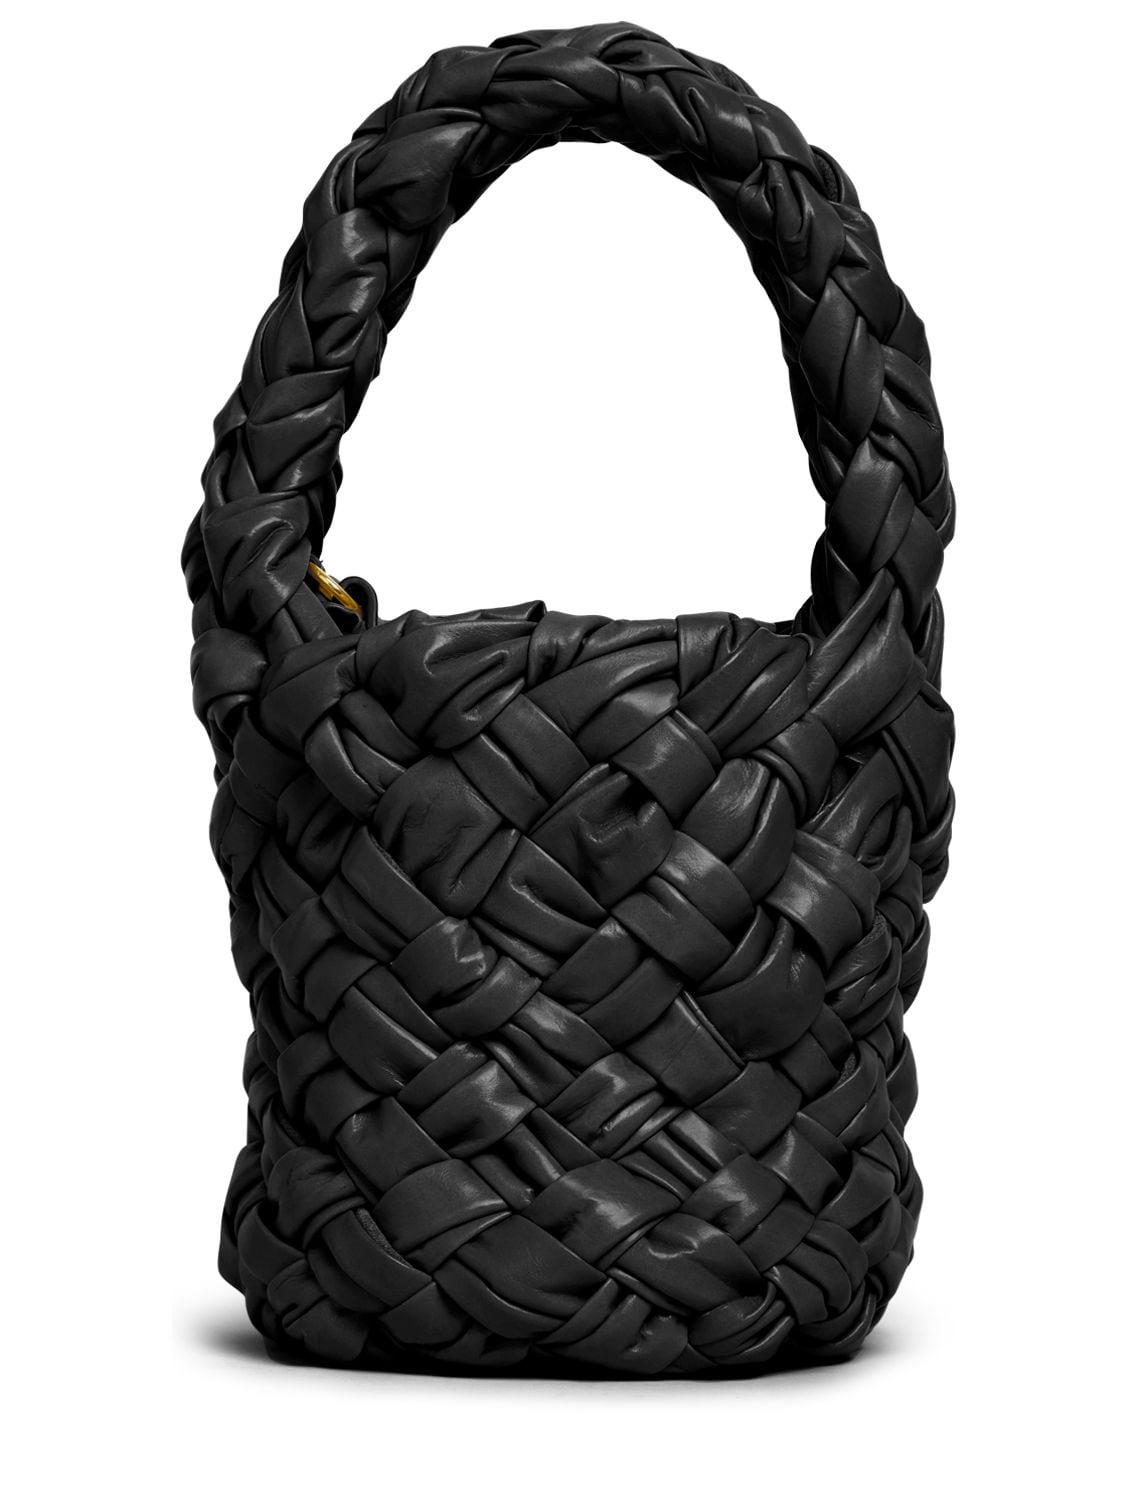 Image of Kalimero Leather Top Handle Bag